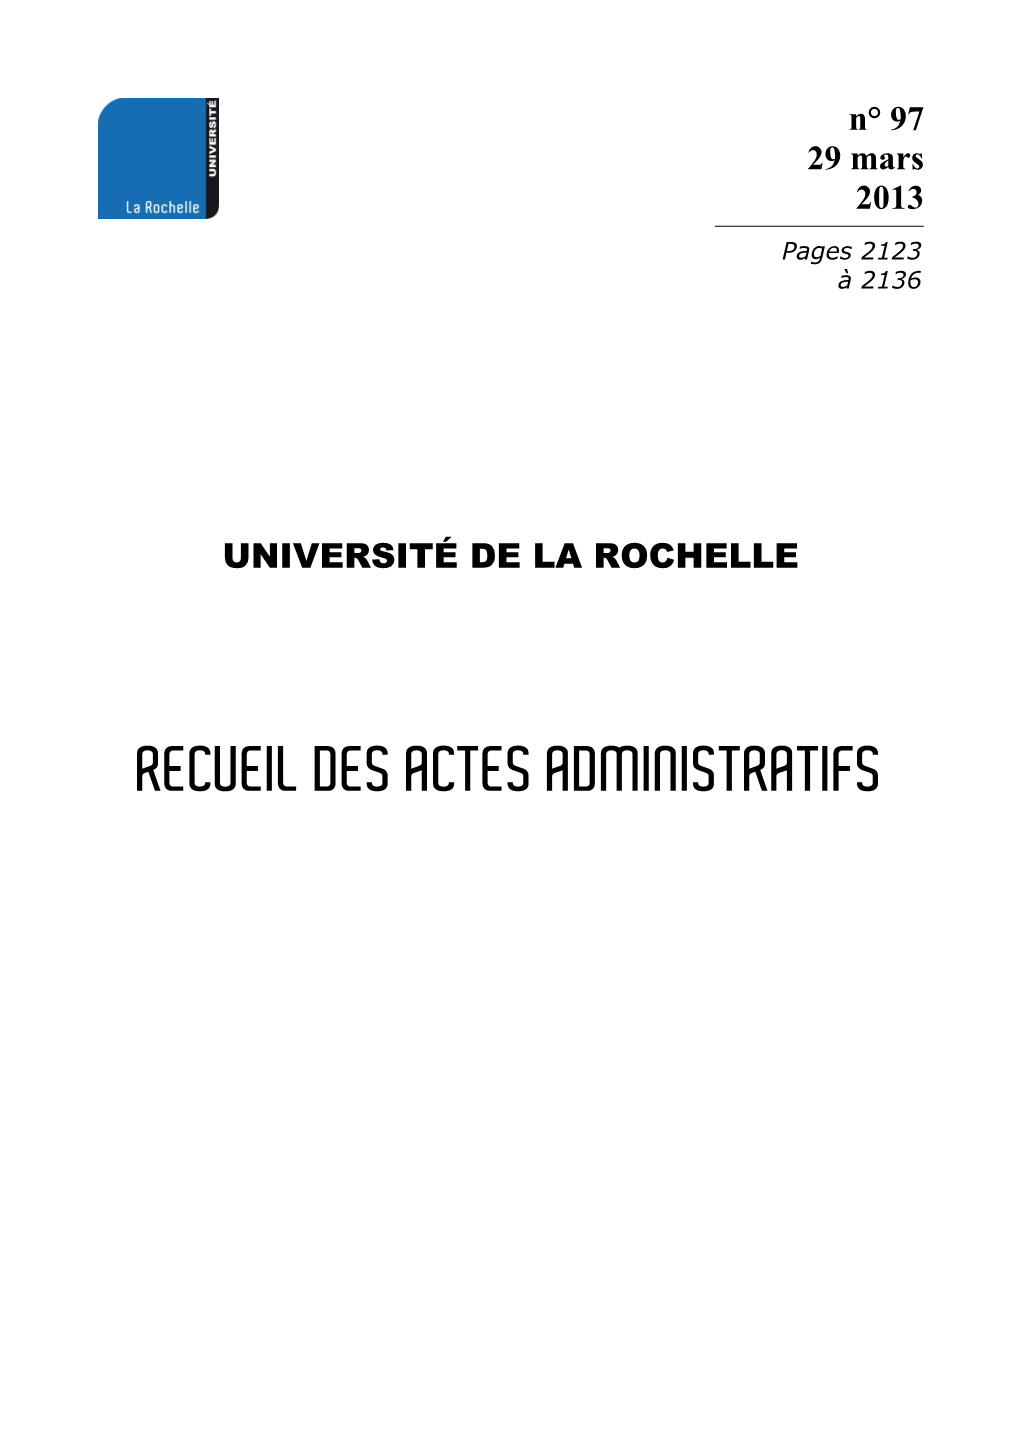 RECUEIL DES ACTES ADMINISTRATIFS RAA Université De La Rochelle N° 97 2124 29 MARS 2013